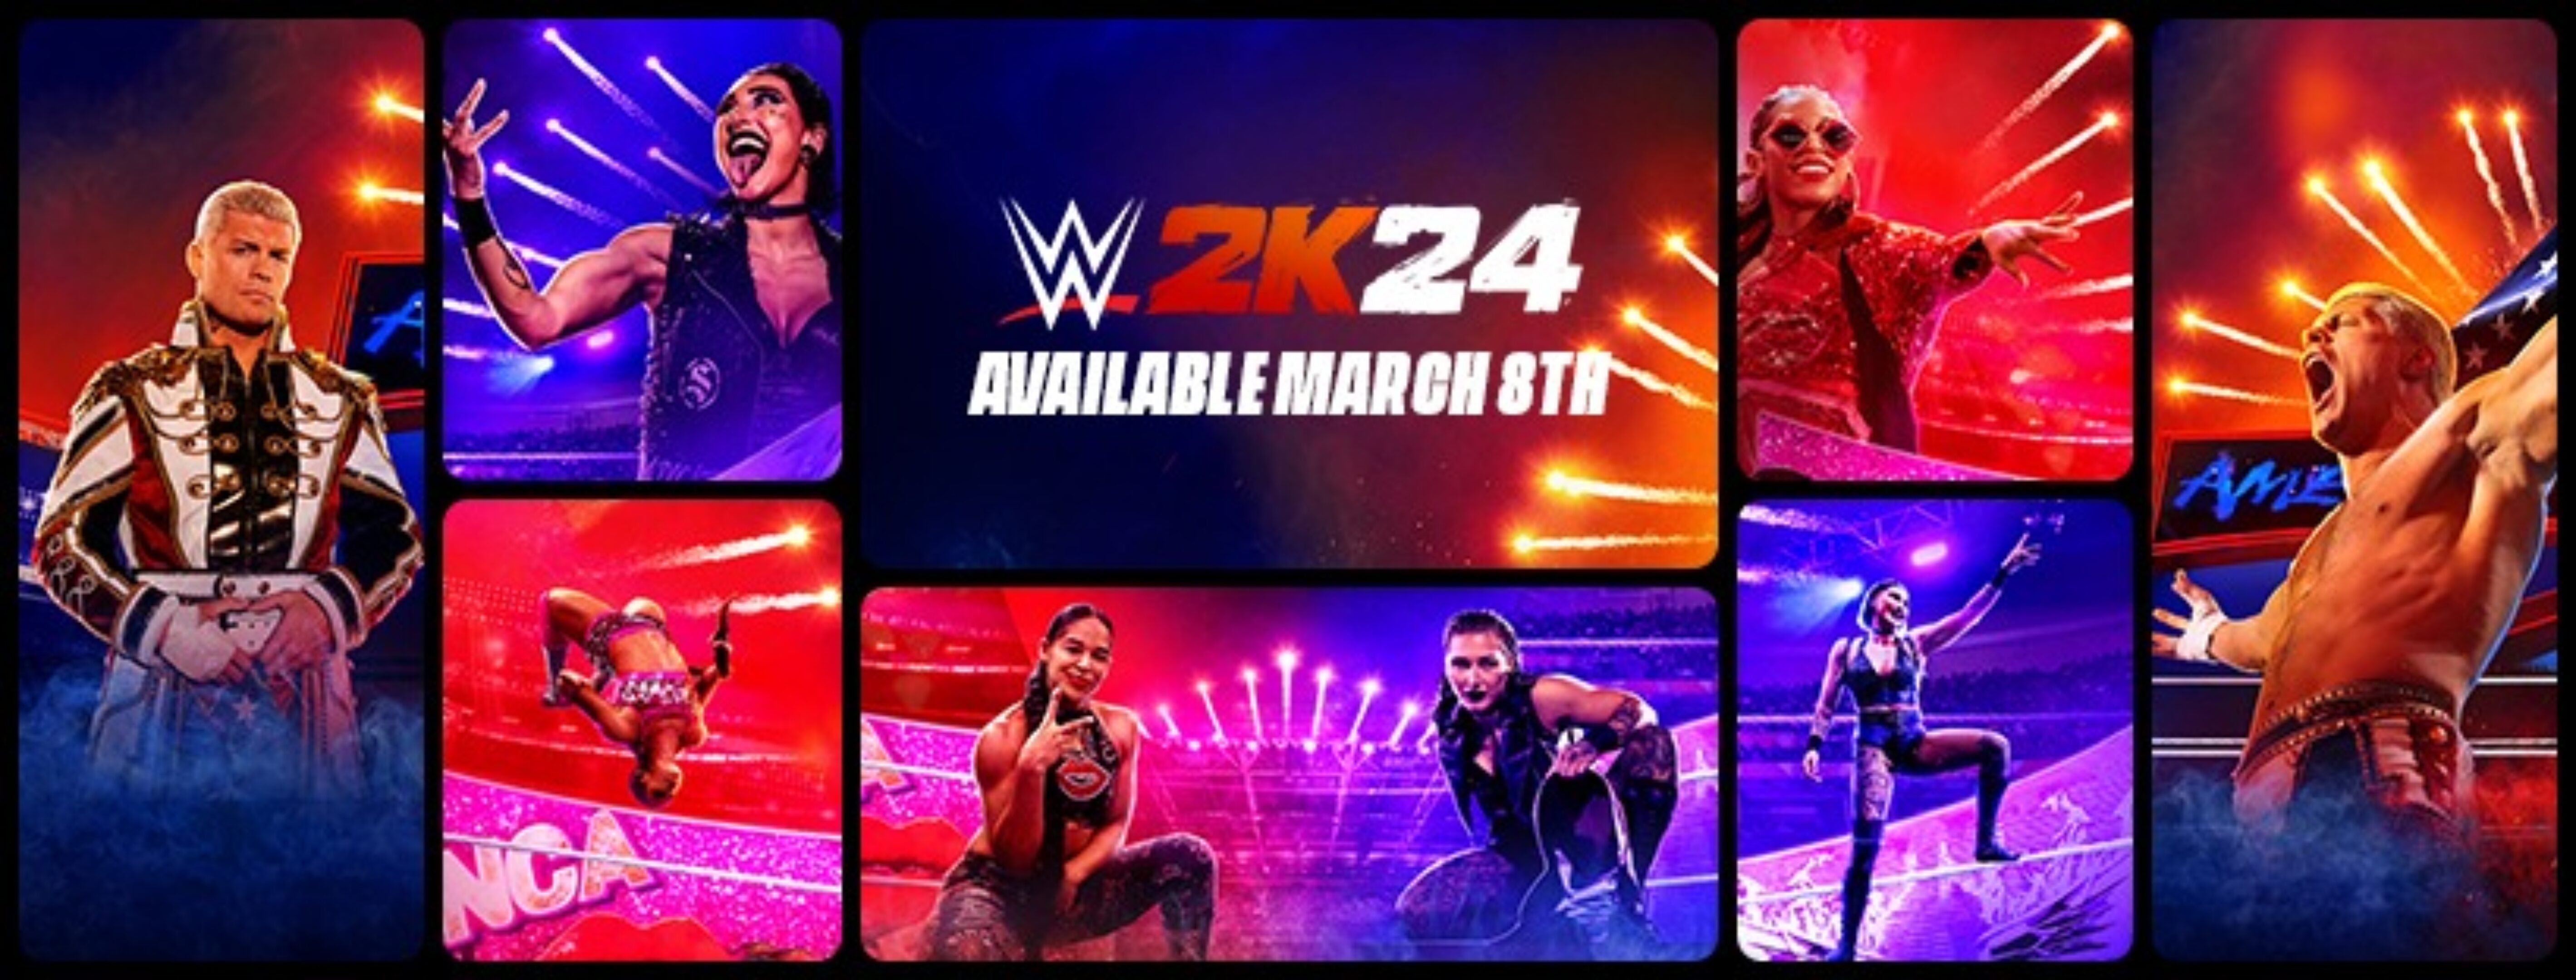 WWE 2K24 Edición Cuarenta años de WrestleMania Cuenta Compartida Xbox One Xbox Series